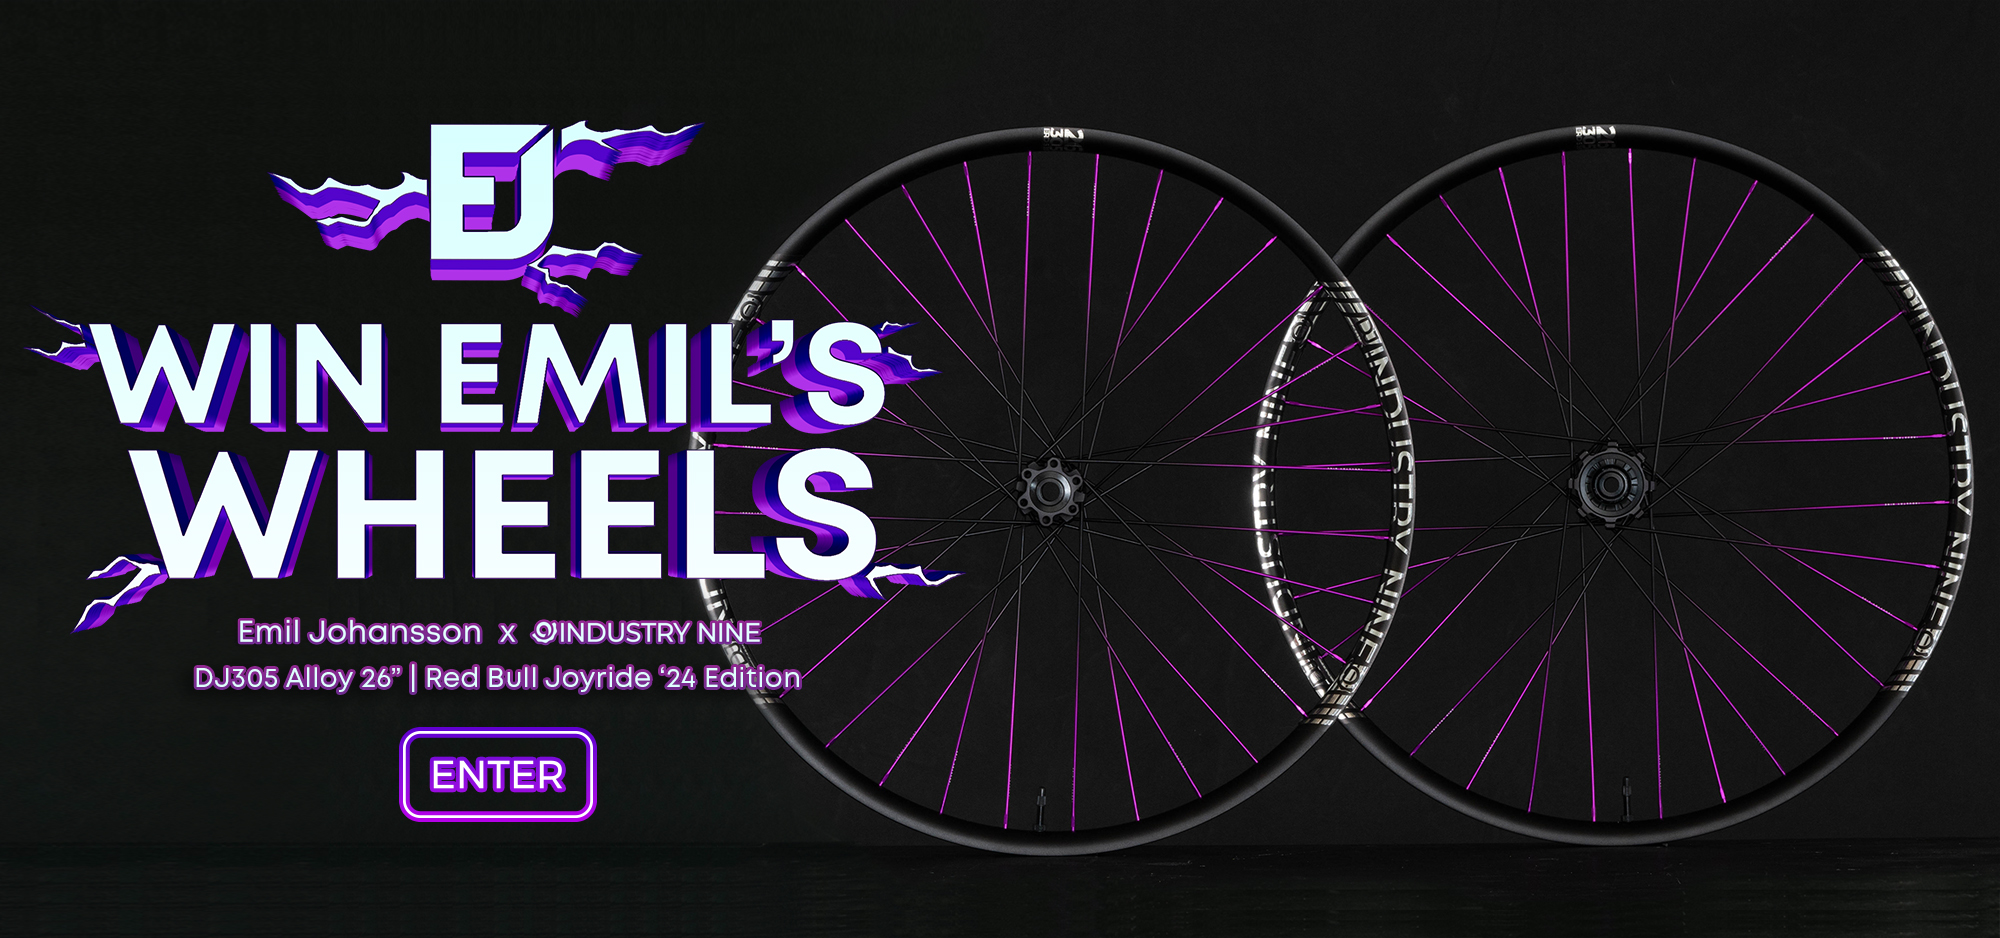 Win Emil's Wheels